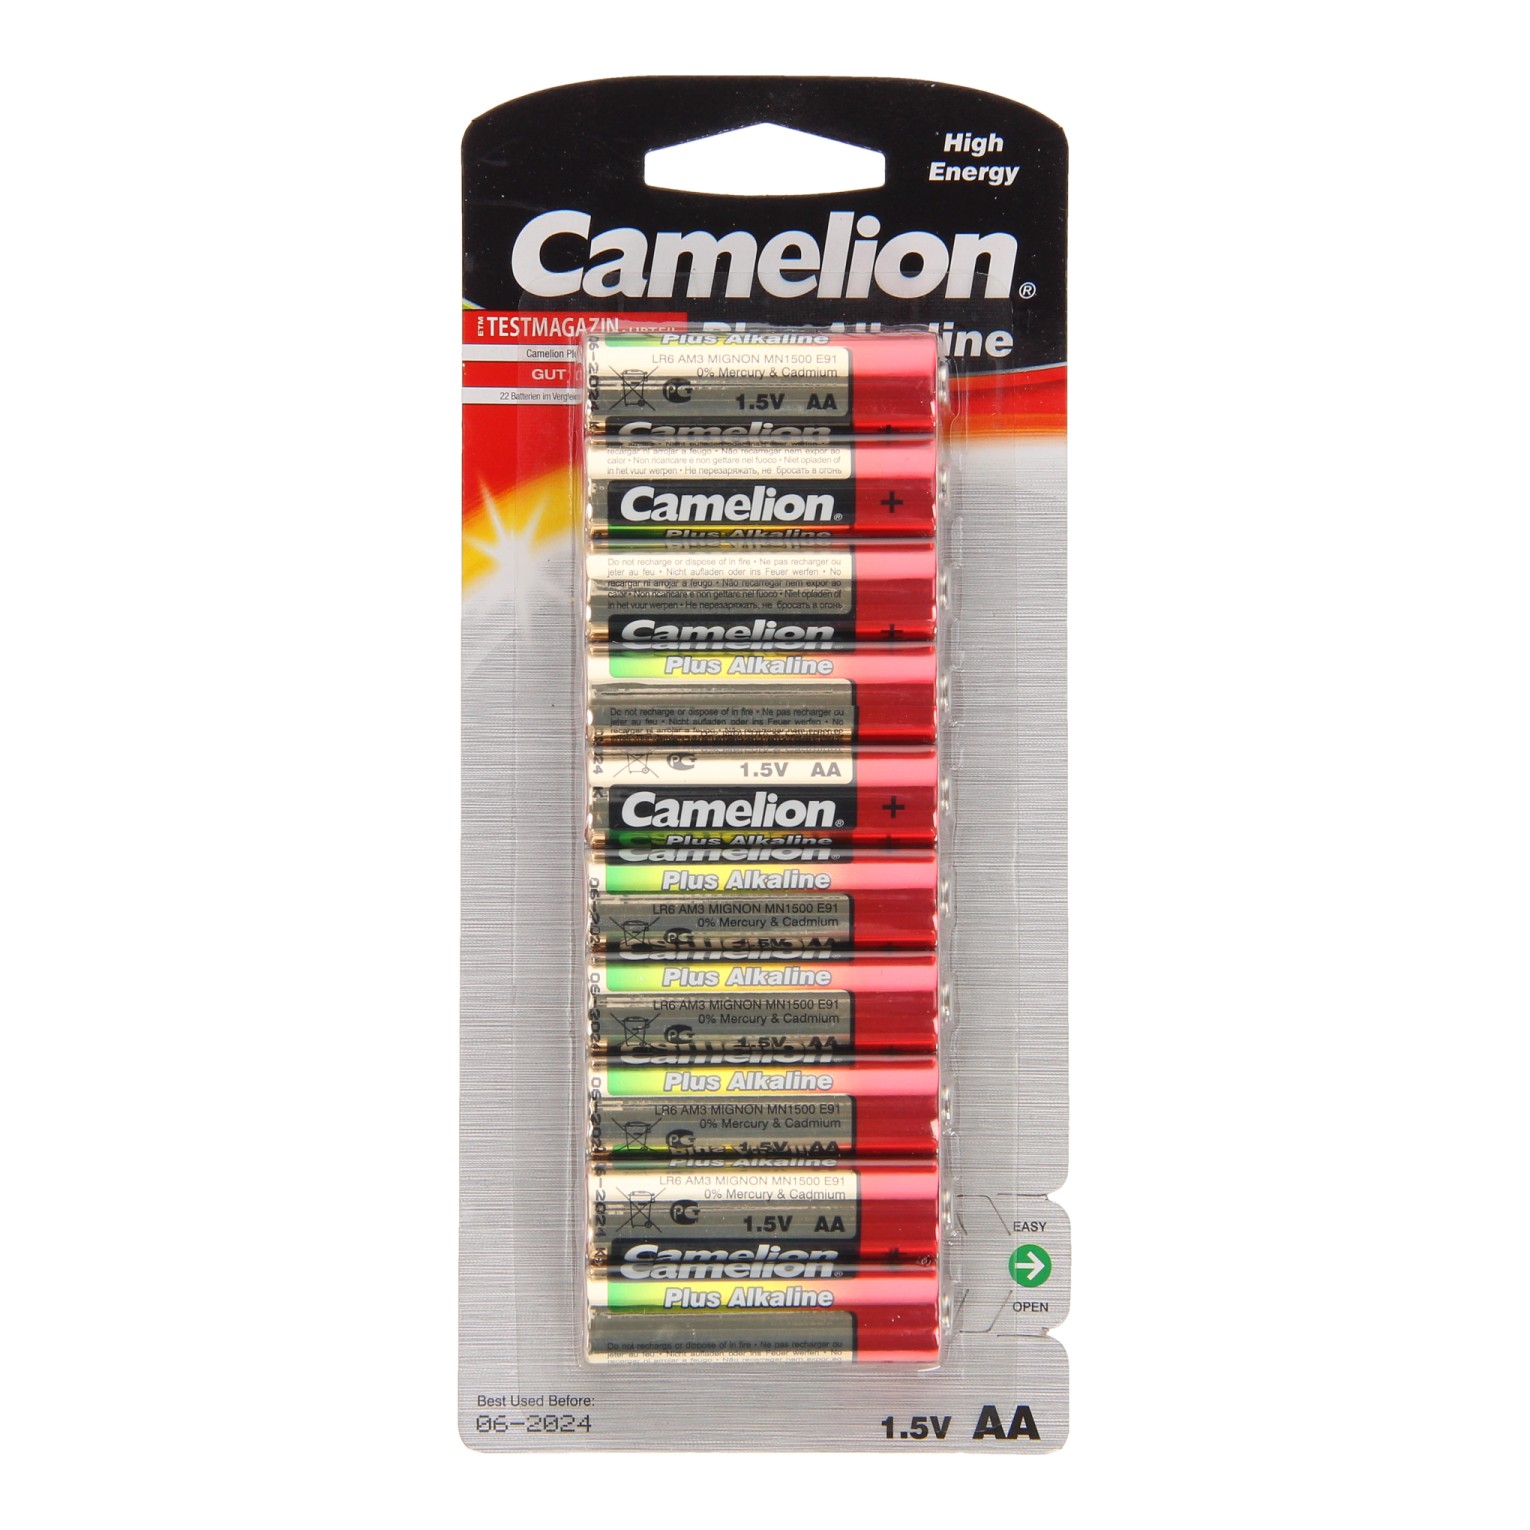 Camelion Plus Batterij Alkaline AA/LR6, 10st.